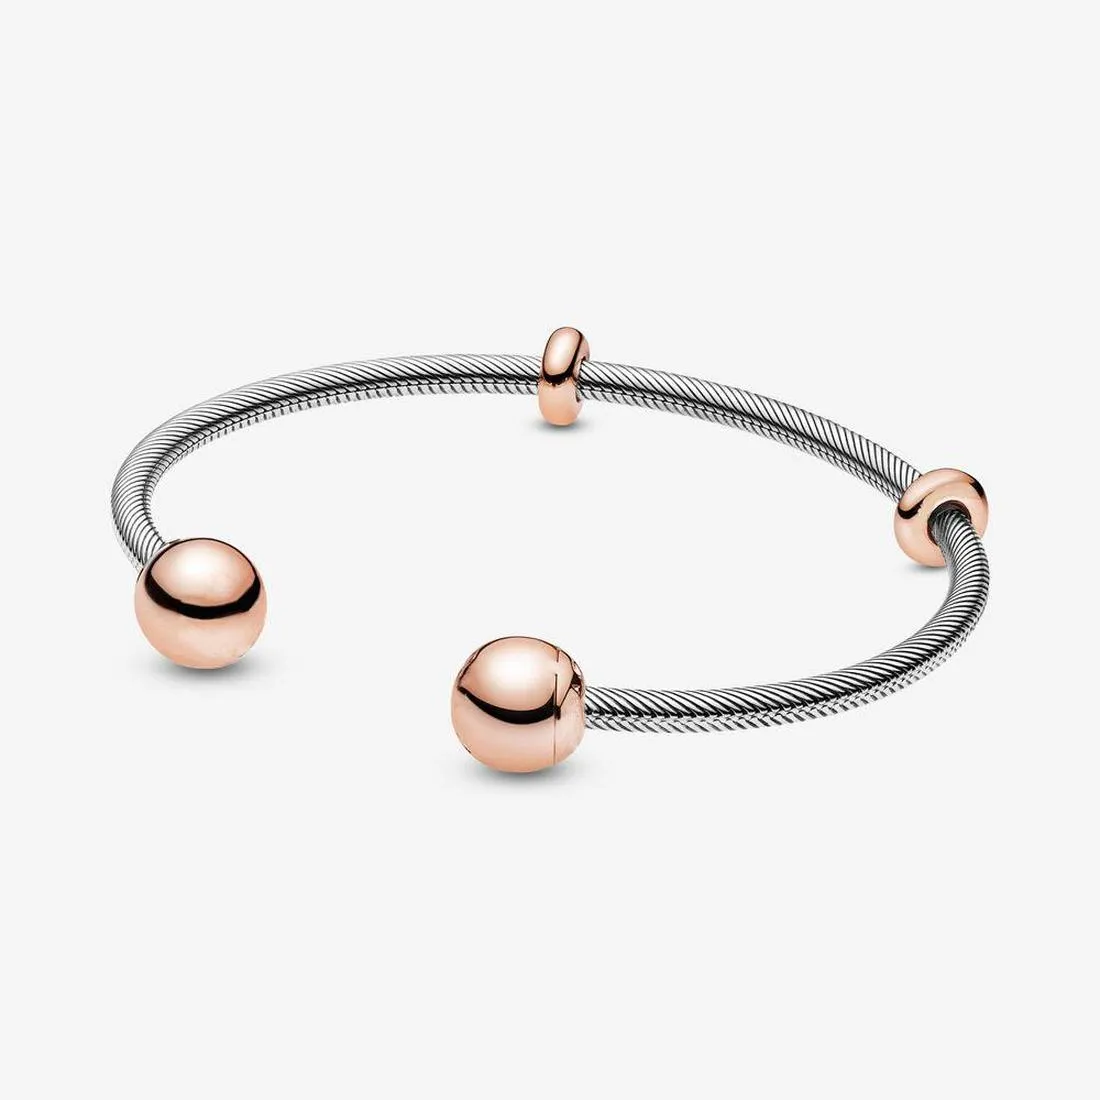 Desenhador jóias 925 pulseira de prata encanto bead encaixe pandora rosa ouro cadeada de cobra estilagem de corrediça braceletes de corrediça braceletes pérolas estilo europeu encantos frisado Murano